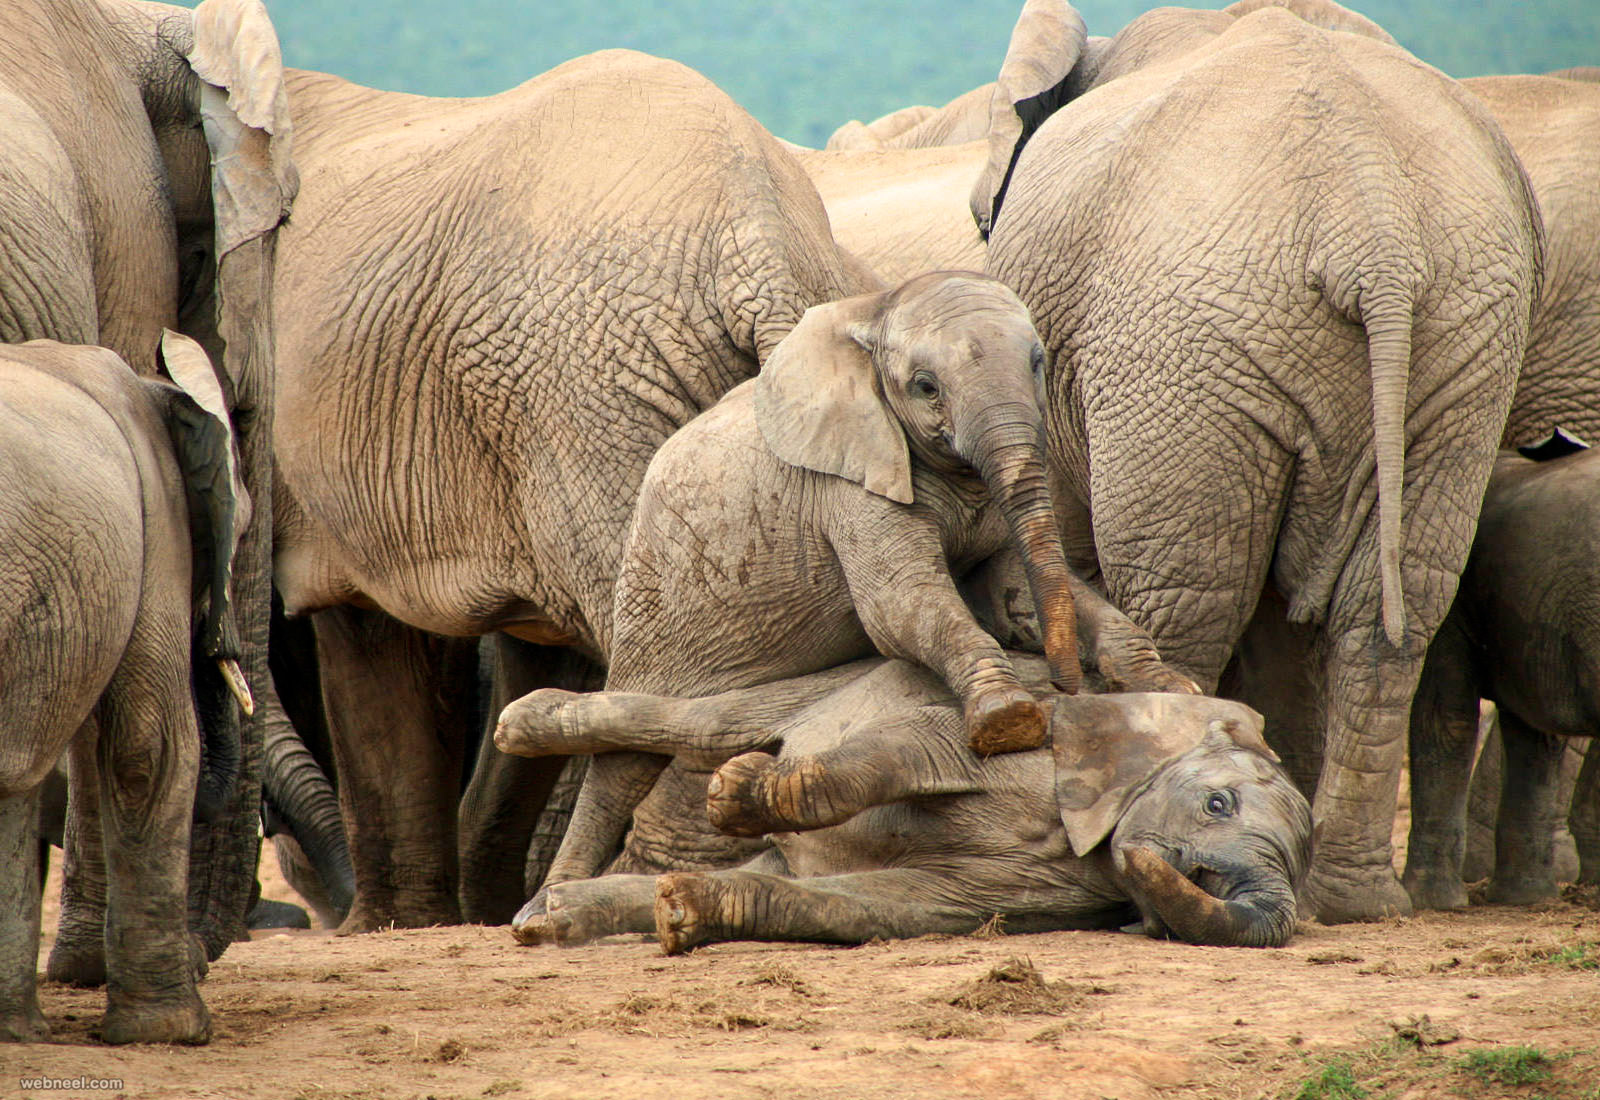 africa elephant wildlife photography